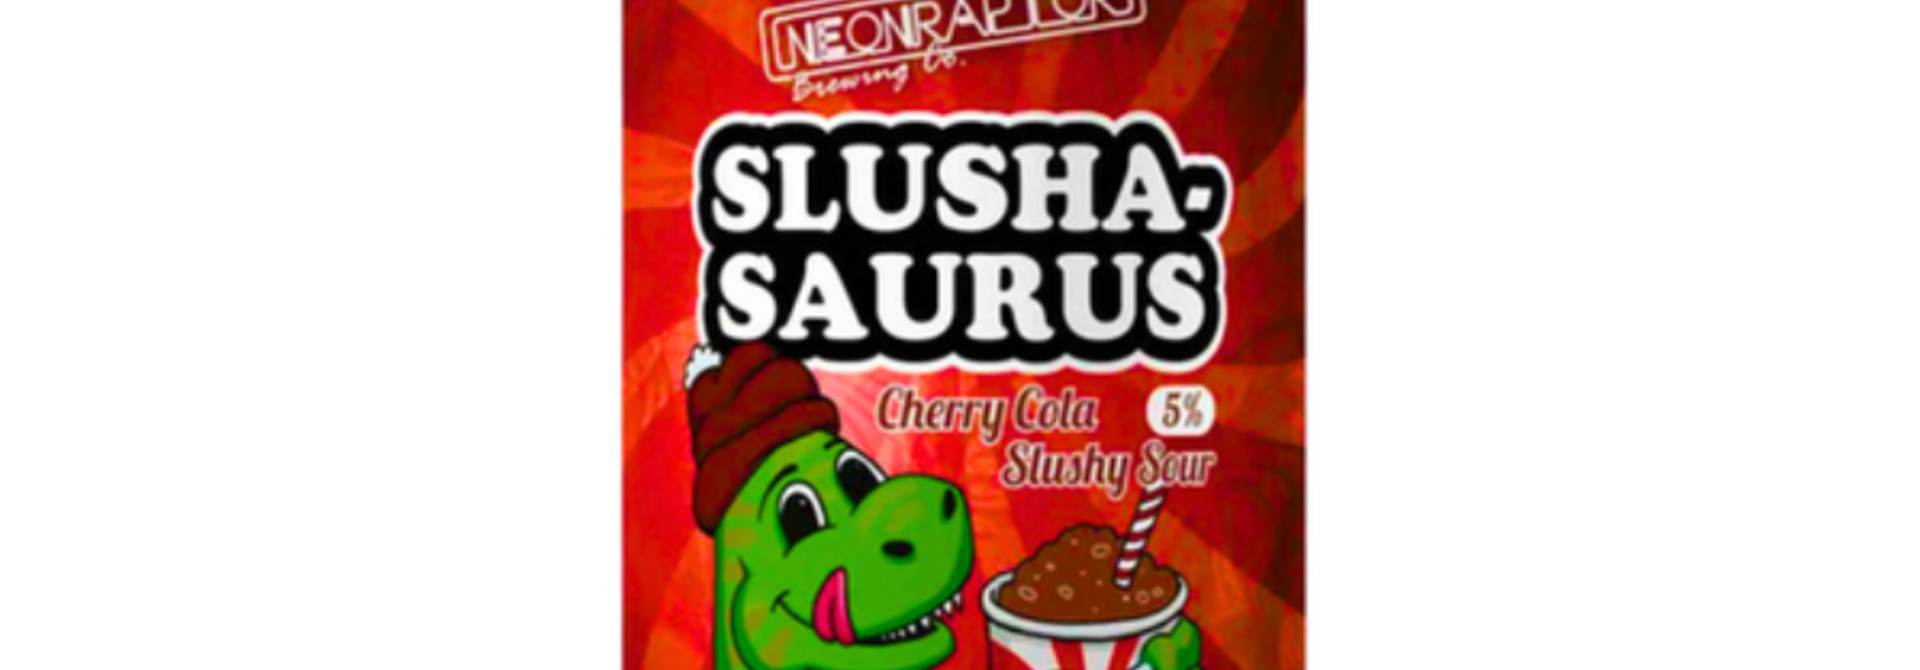 Neon Raptor Cherry Cola Slushasaurus 44cl 5%